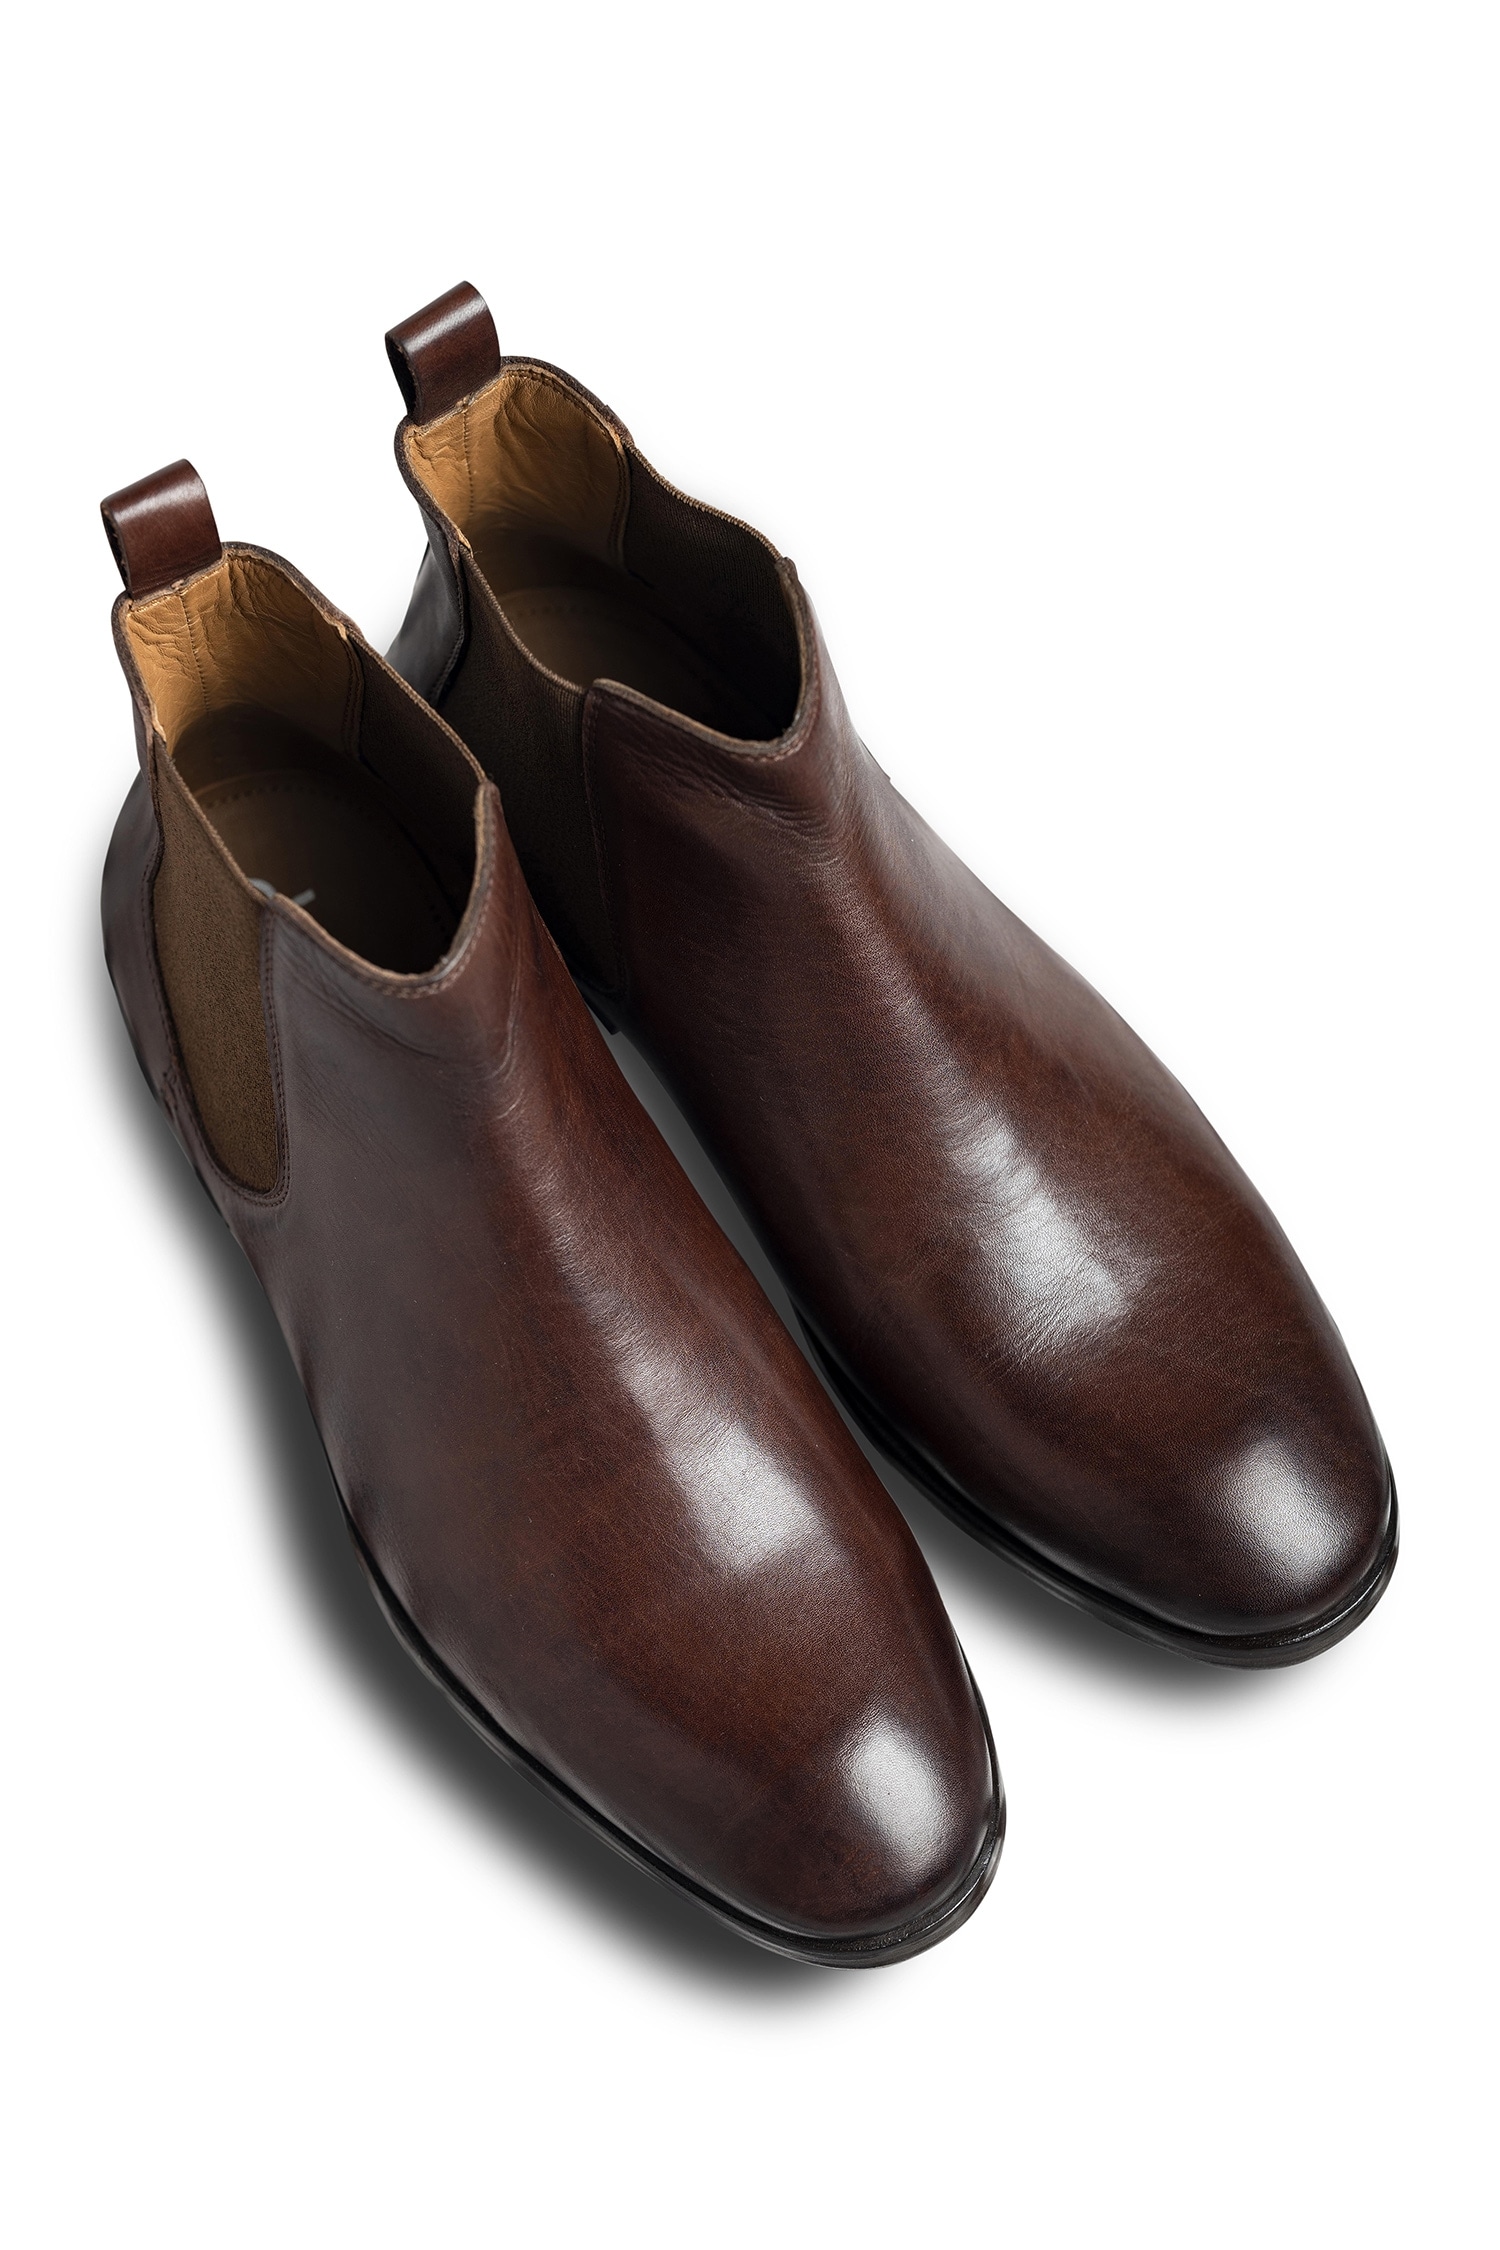 Dmodot Brown Leather Sprazzo Marrone Chelsea Boots